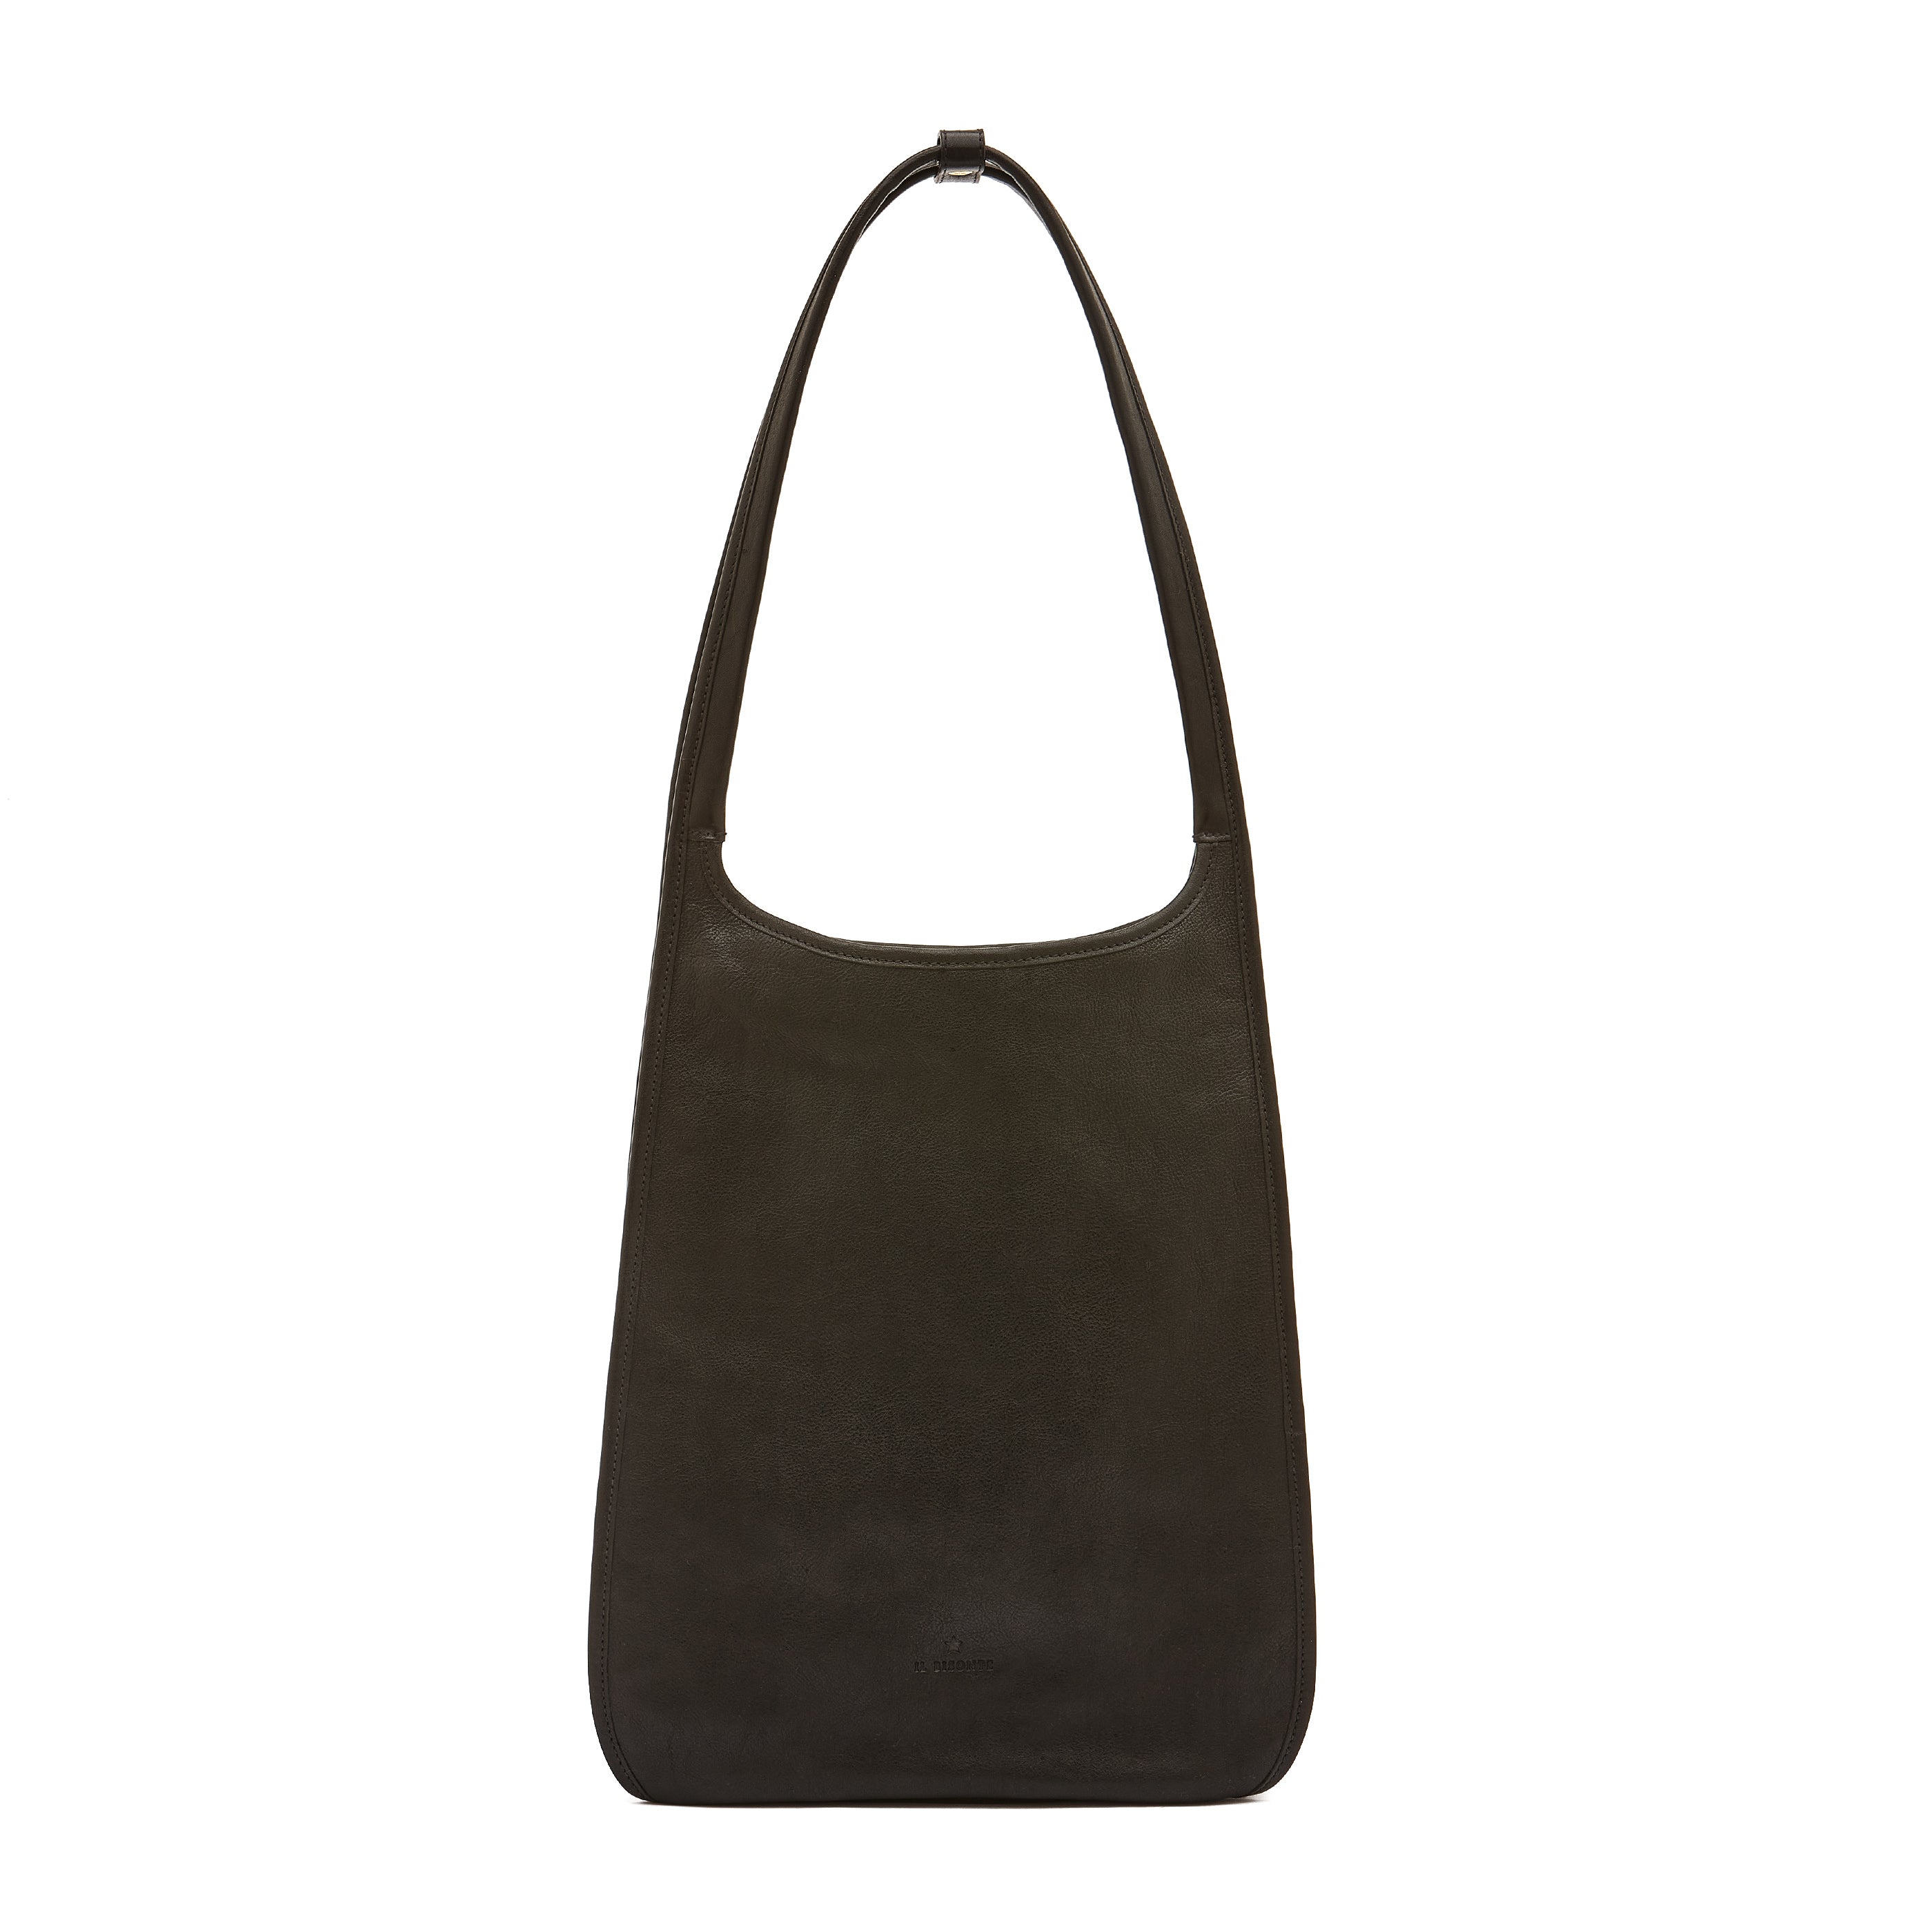 Sguardo | Women's shoulder bag in vintage leather color black